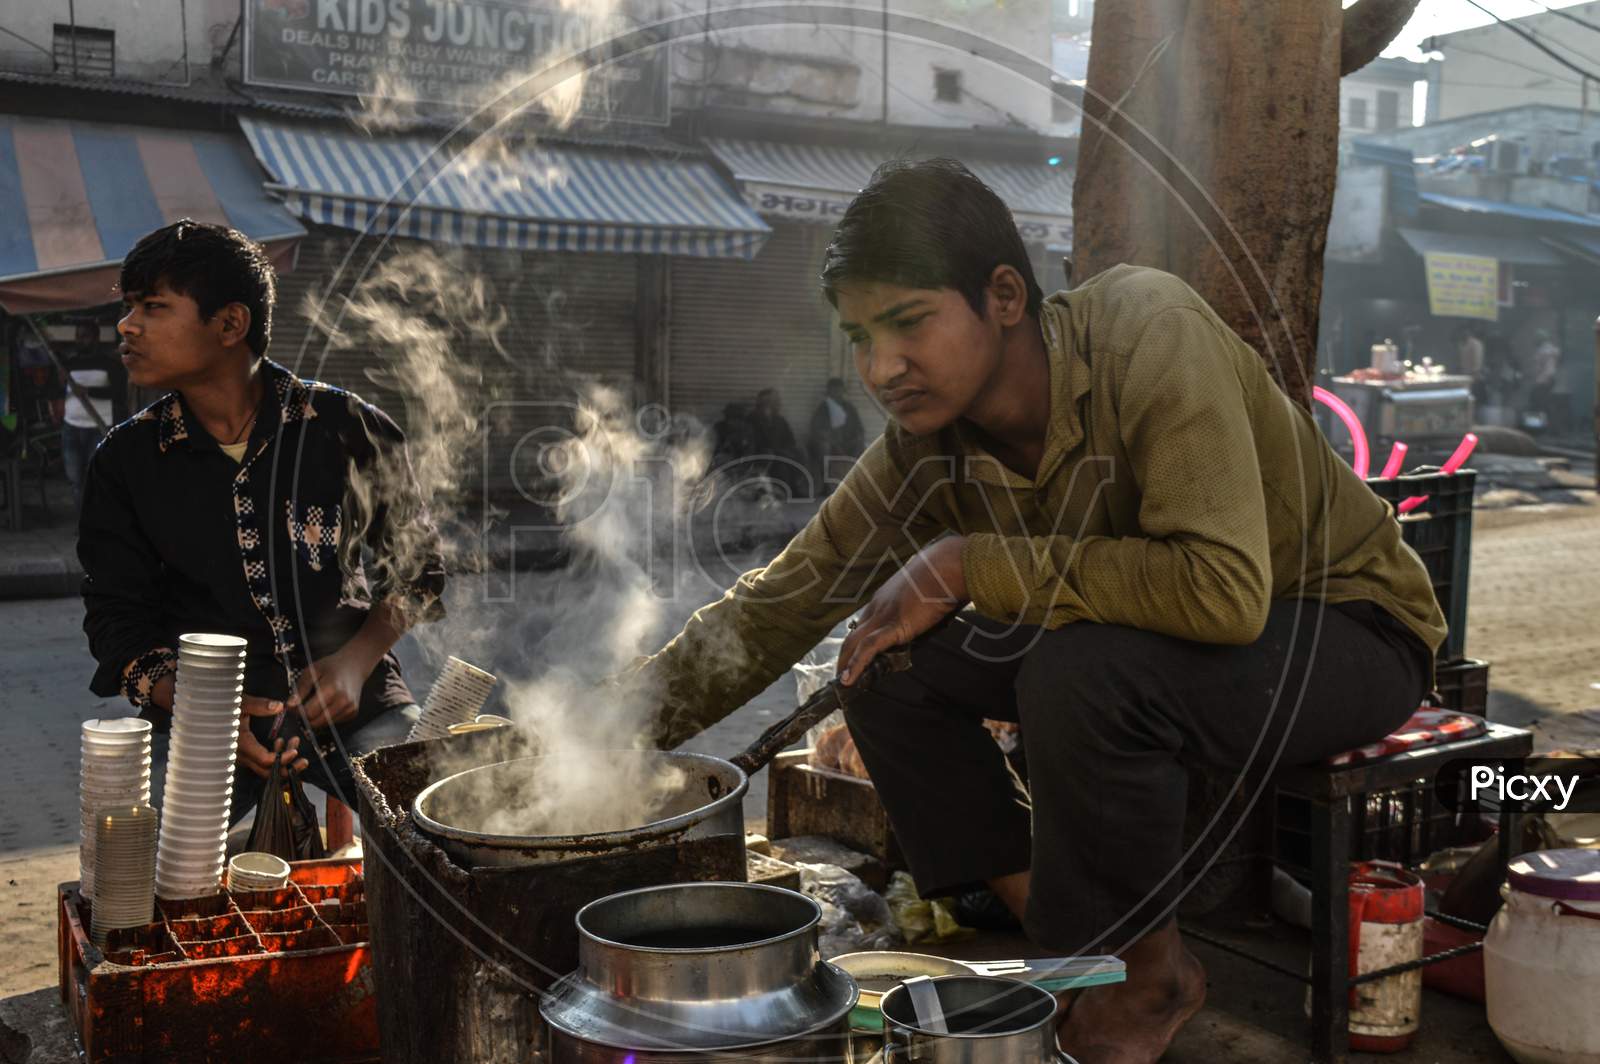 Indian Boy Making Tea At Street Of Chandni Chowk At Morning, Smoke